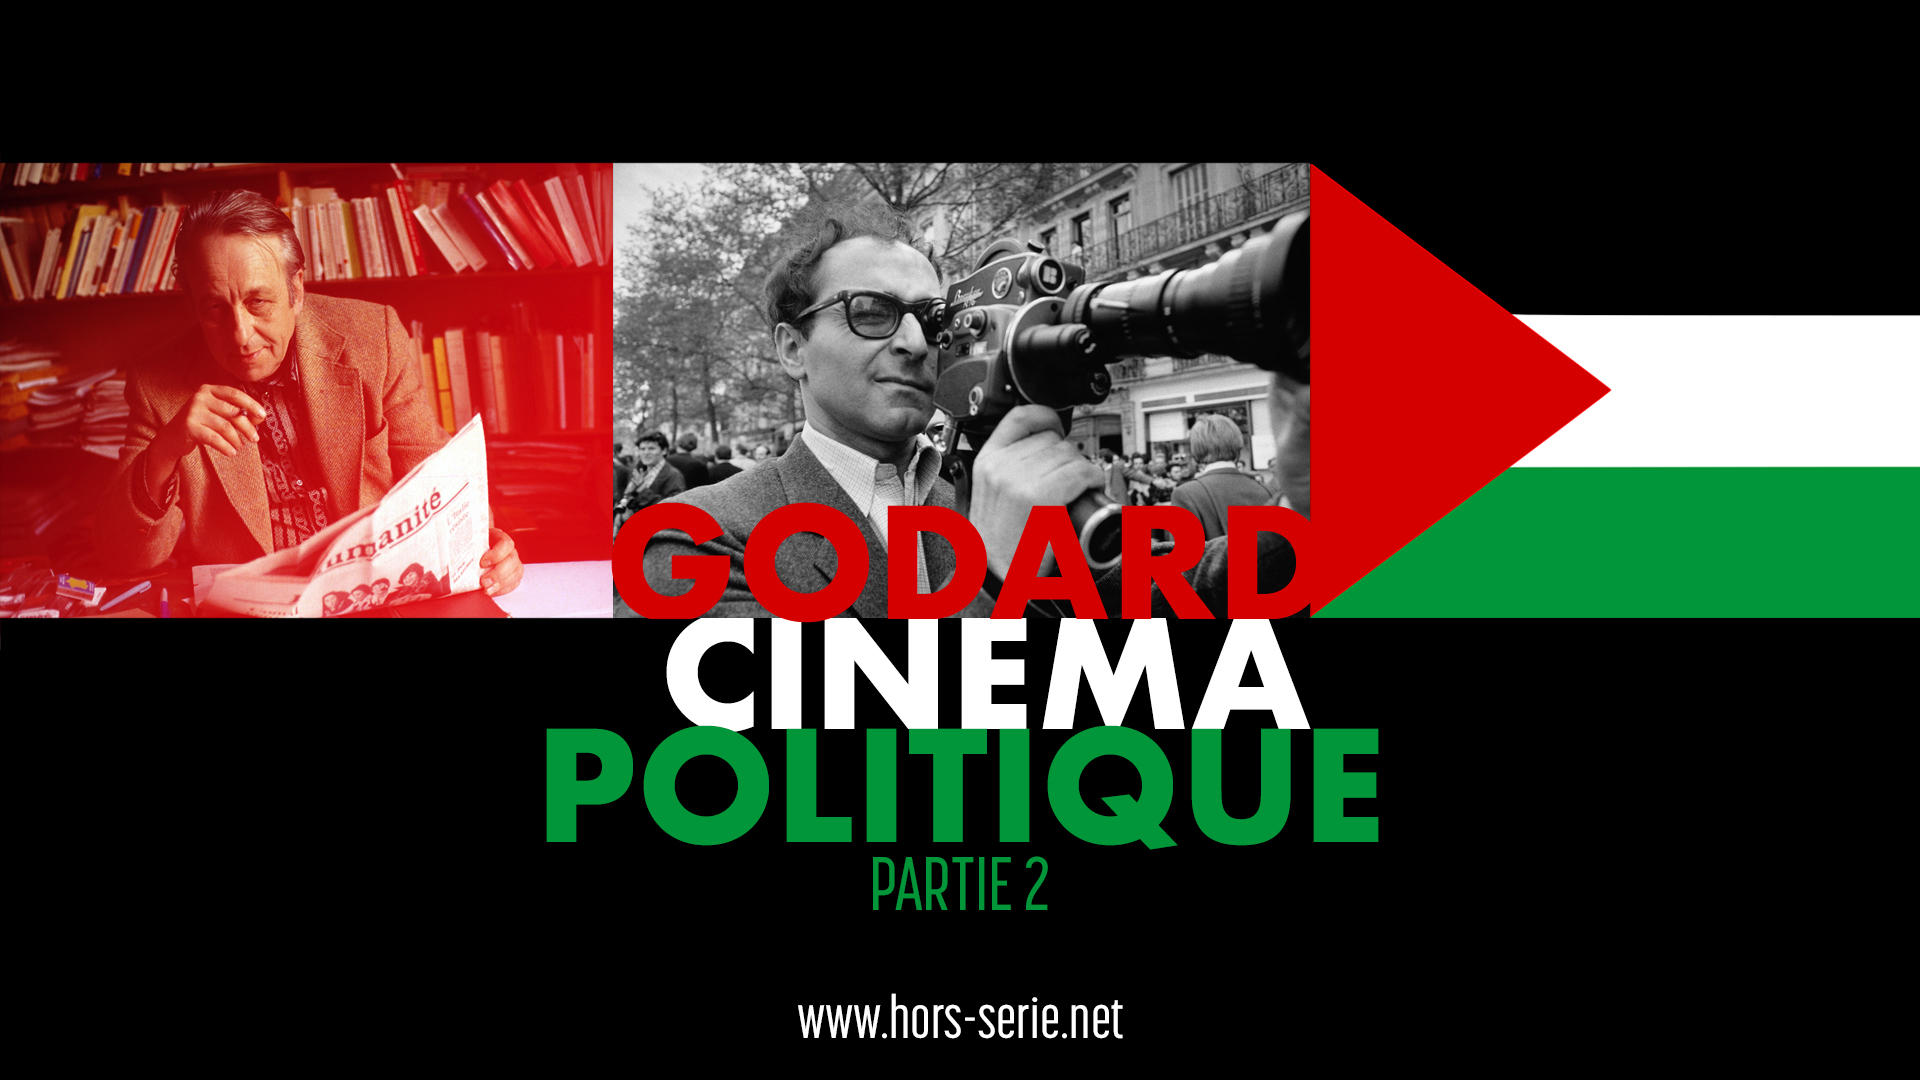 Godard cinéma politique (part. 2)